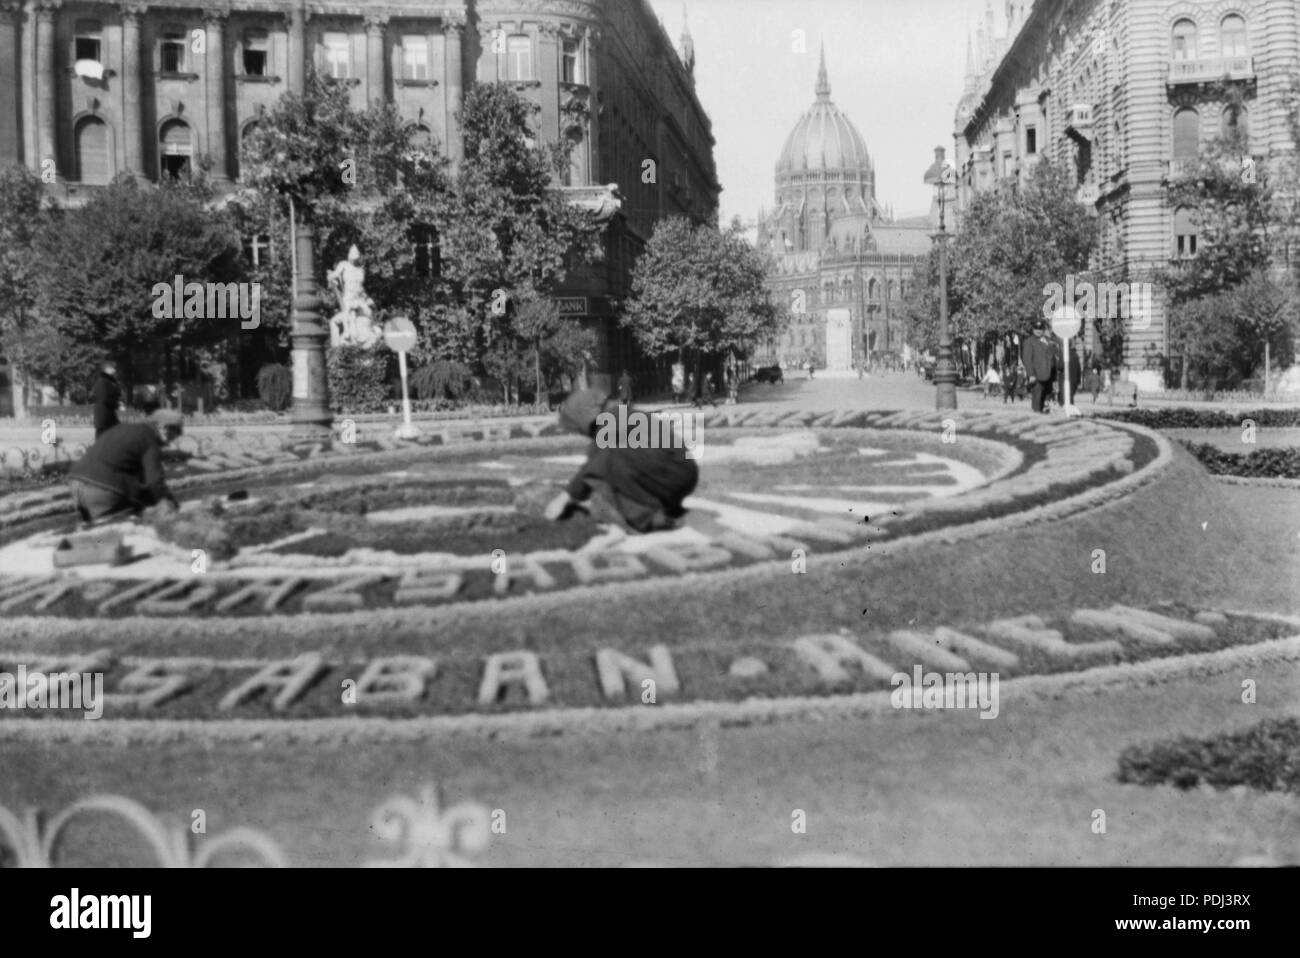 350 Szabadság tér, irredenta emlékhely, háttérben a Vécsey utca és a Parlament. Balra az Irredenta Szoborcsoport - Fortepan 19573 Stock Photo